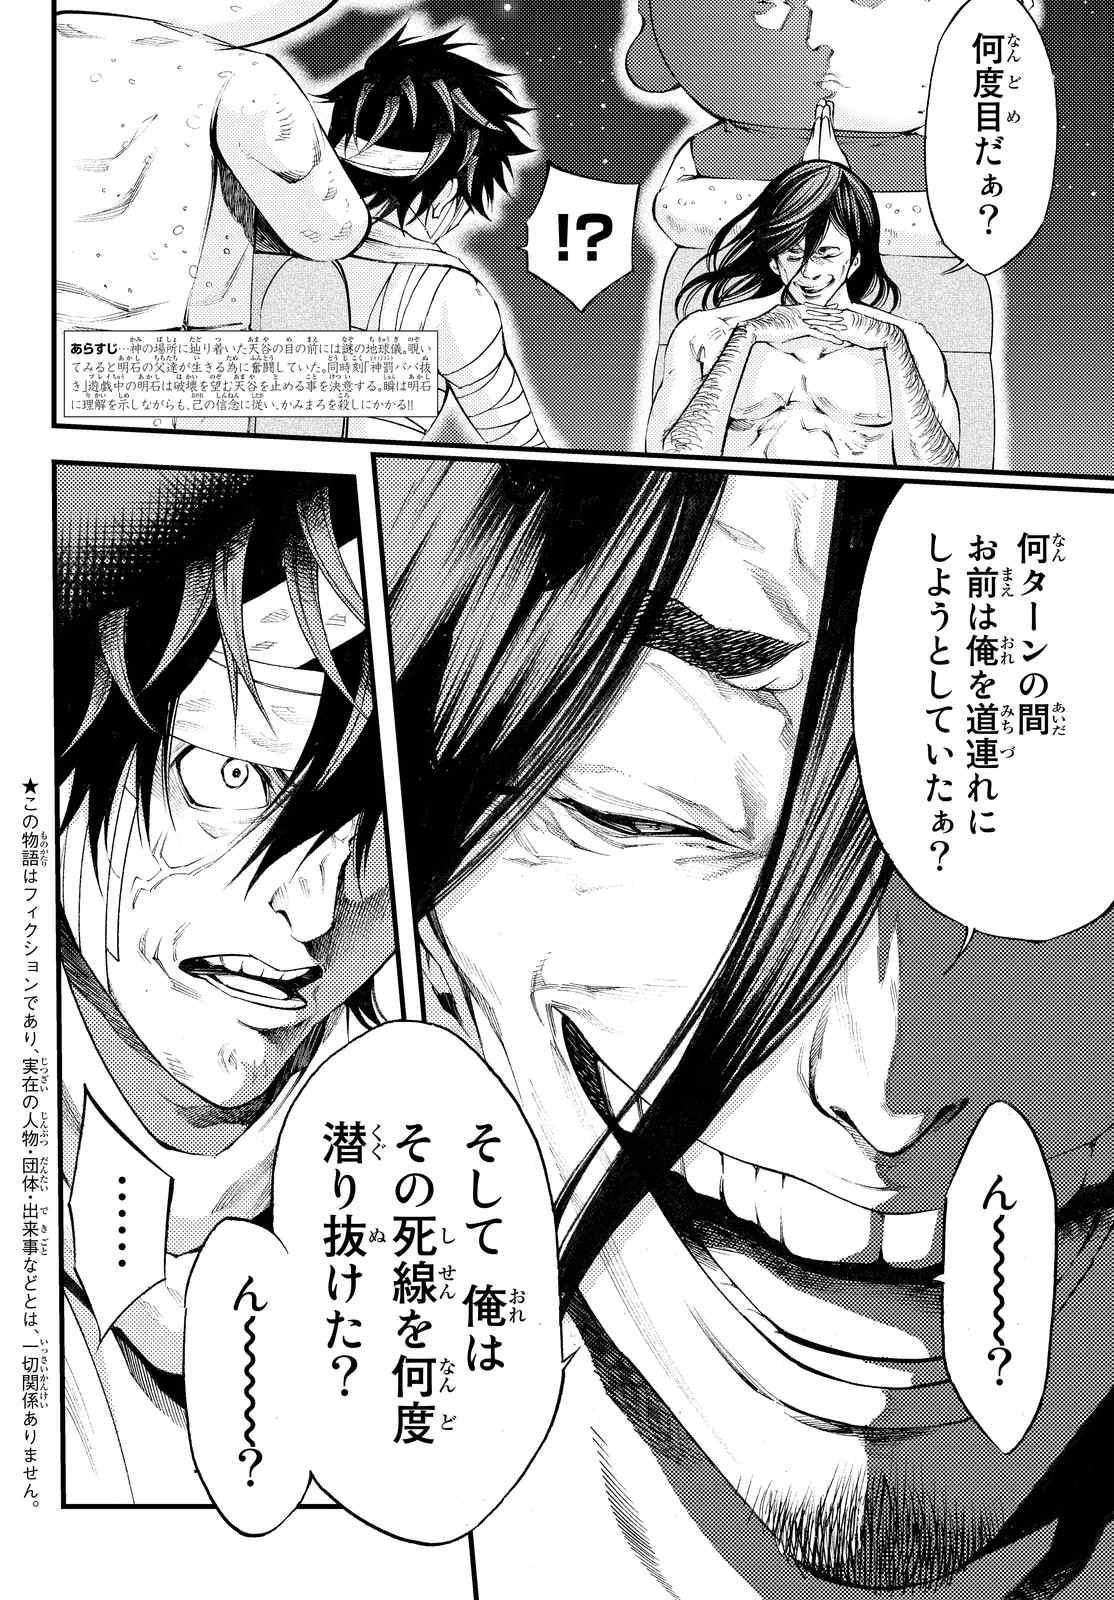 Kamisama no Ituori - Chapter 170 - Page 2